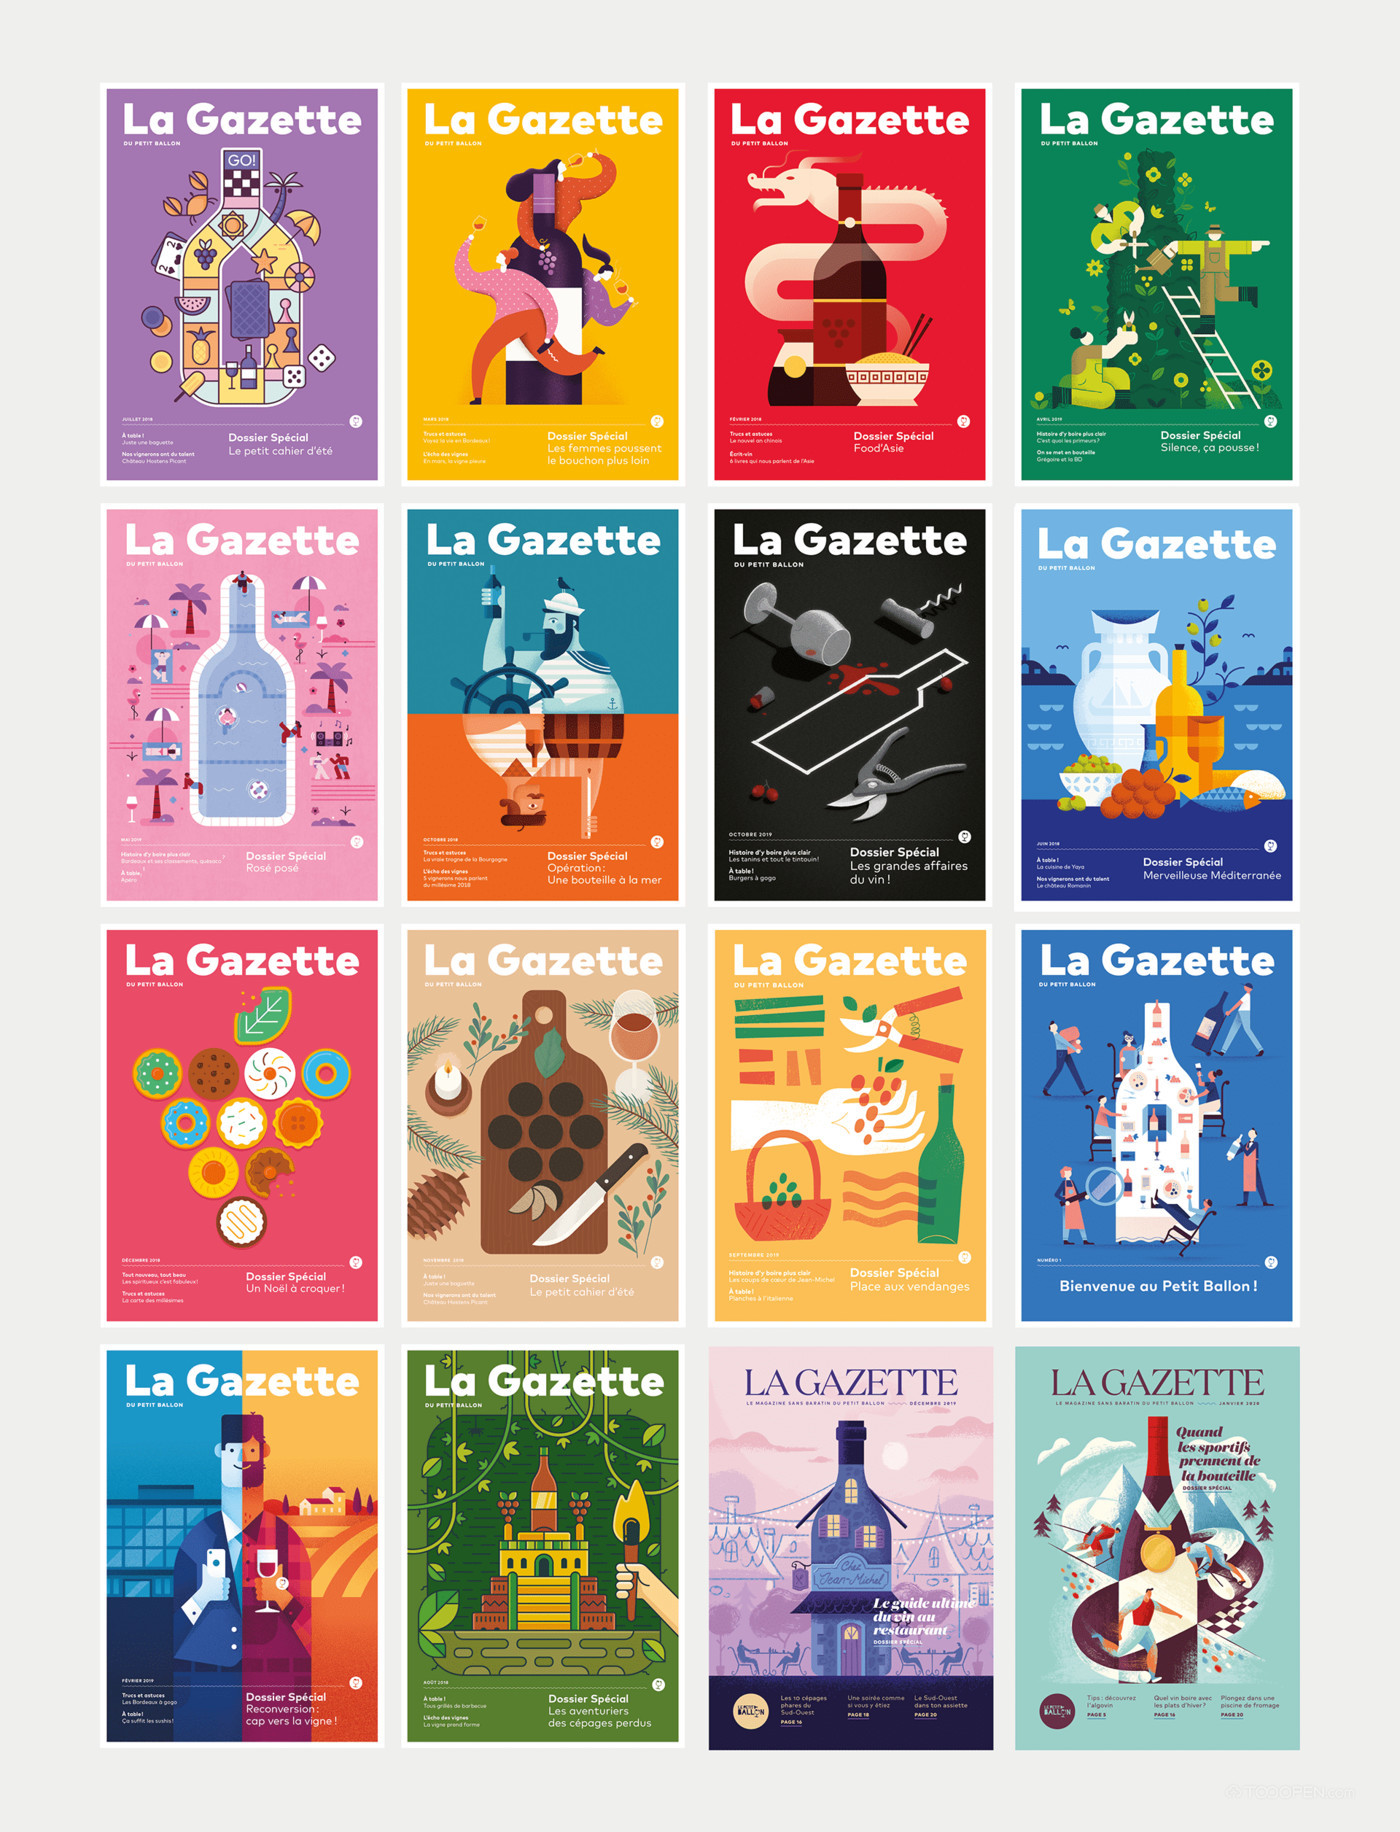 La Gazette葡萄酒月刊封面海报设计欣赏-01